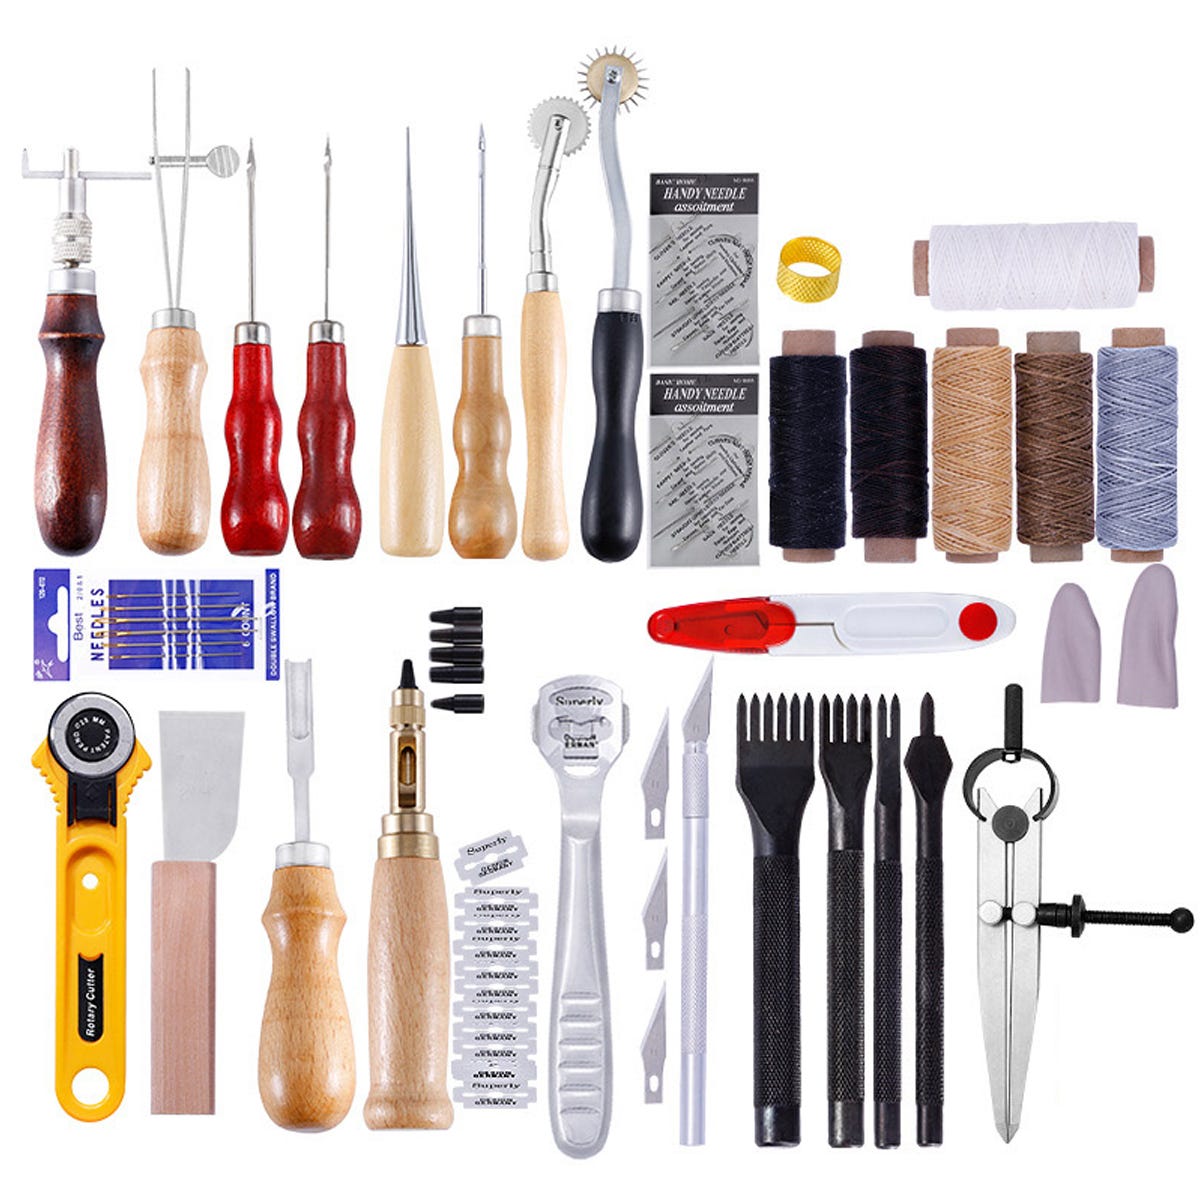 Kit de 61 herramientas artesanales kit de costura de talla de cuero